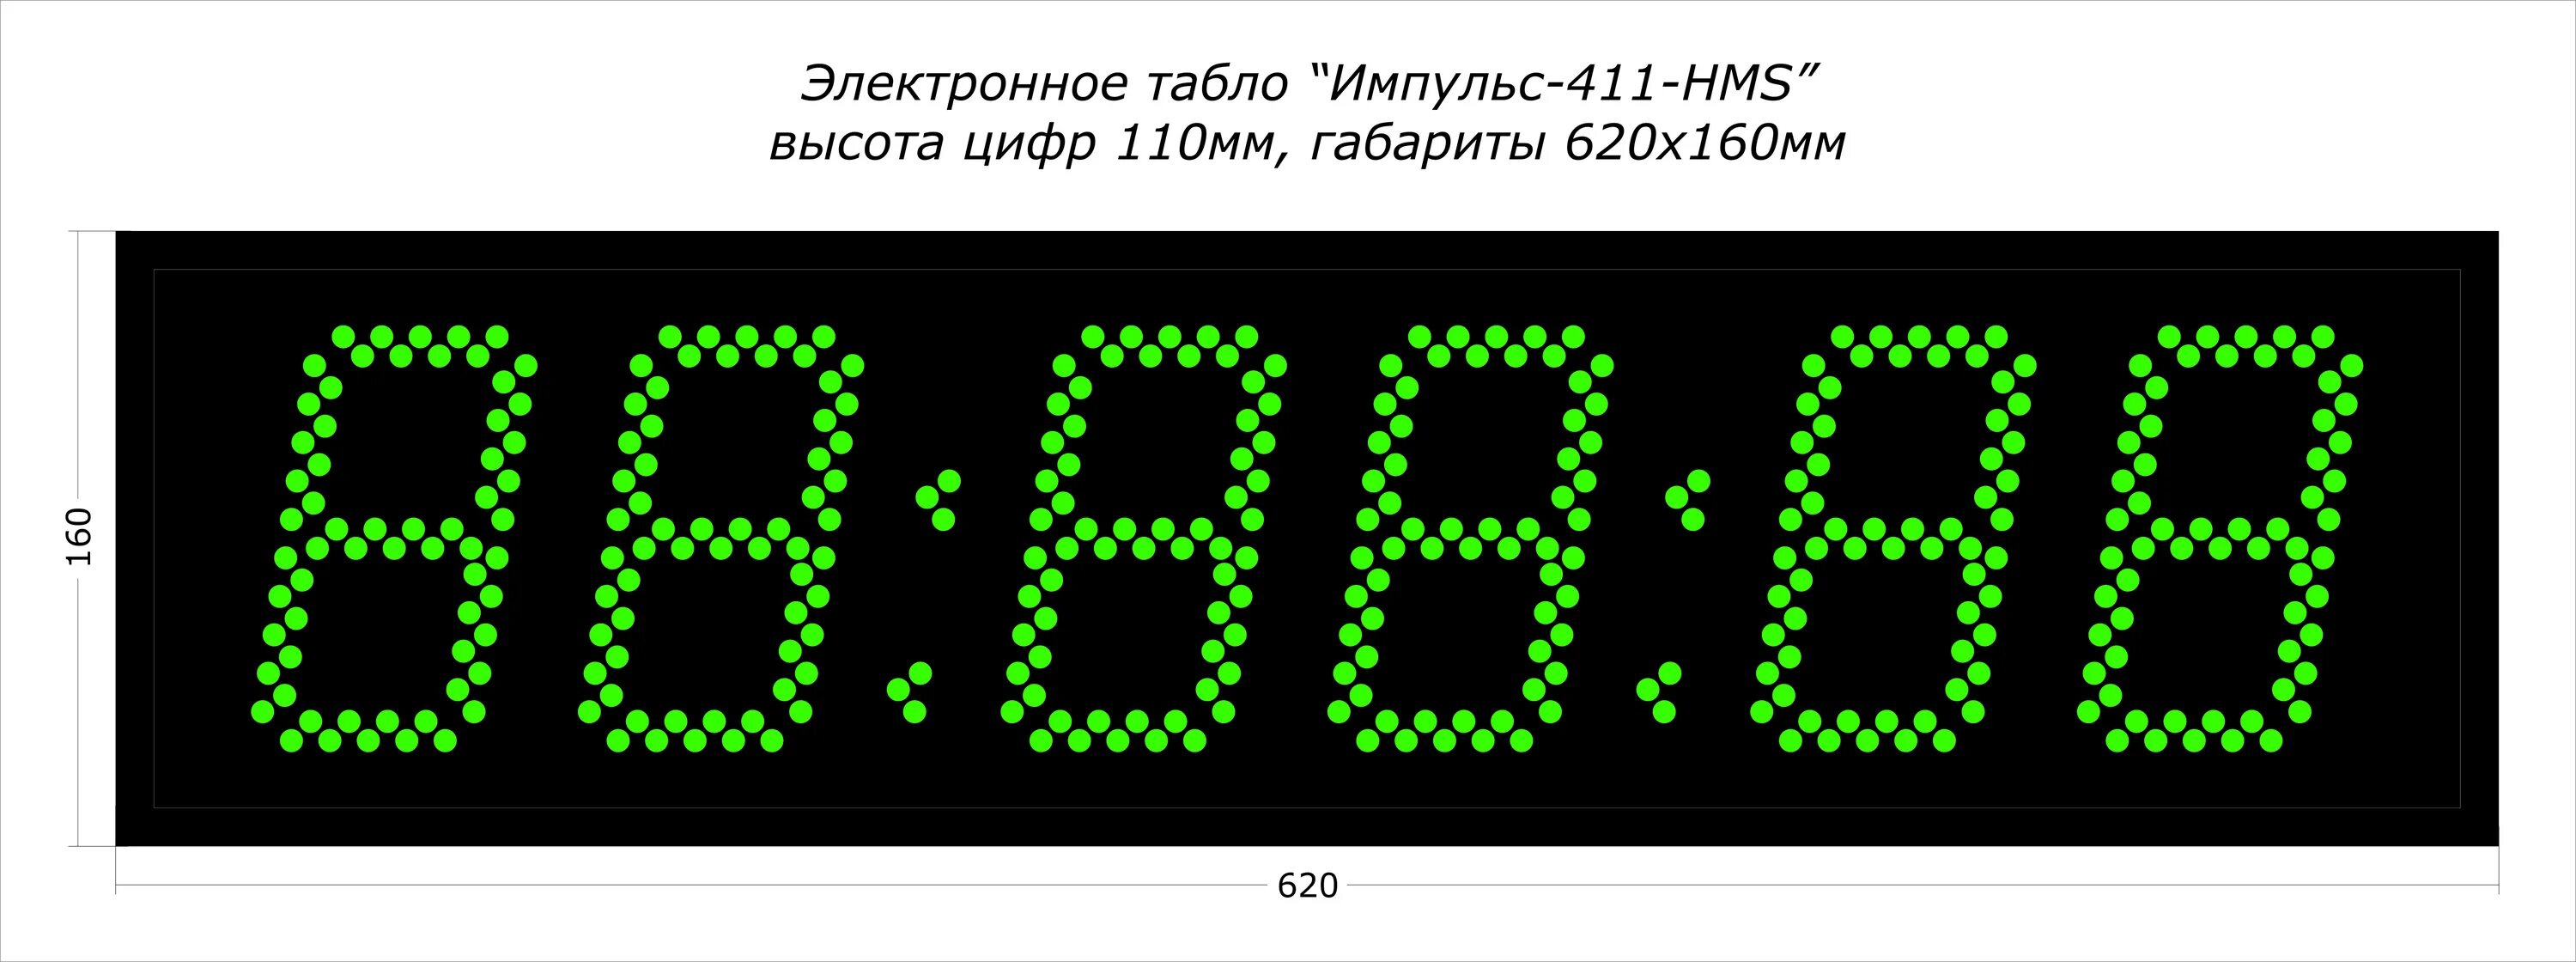 Московское время электронные. Светодиодное табло 24в 45х45мм. Электронные часы. Цифровые часы. Часы уличные цифровые.